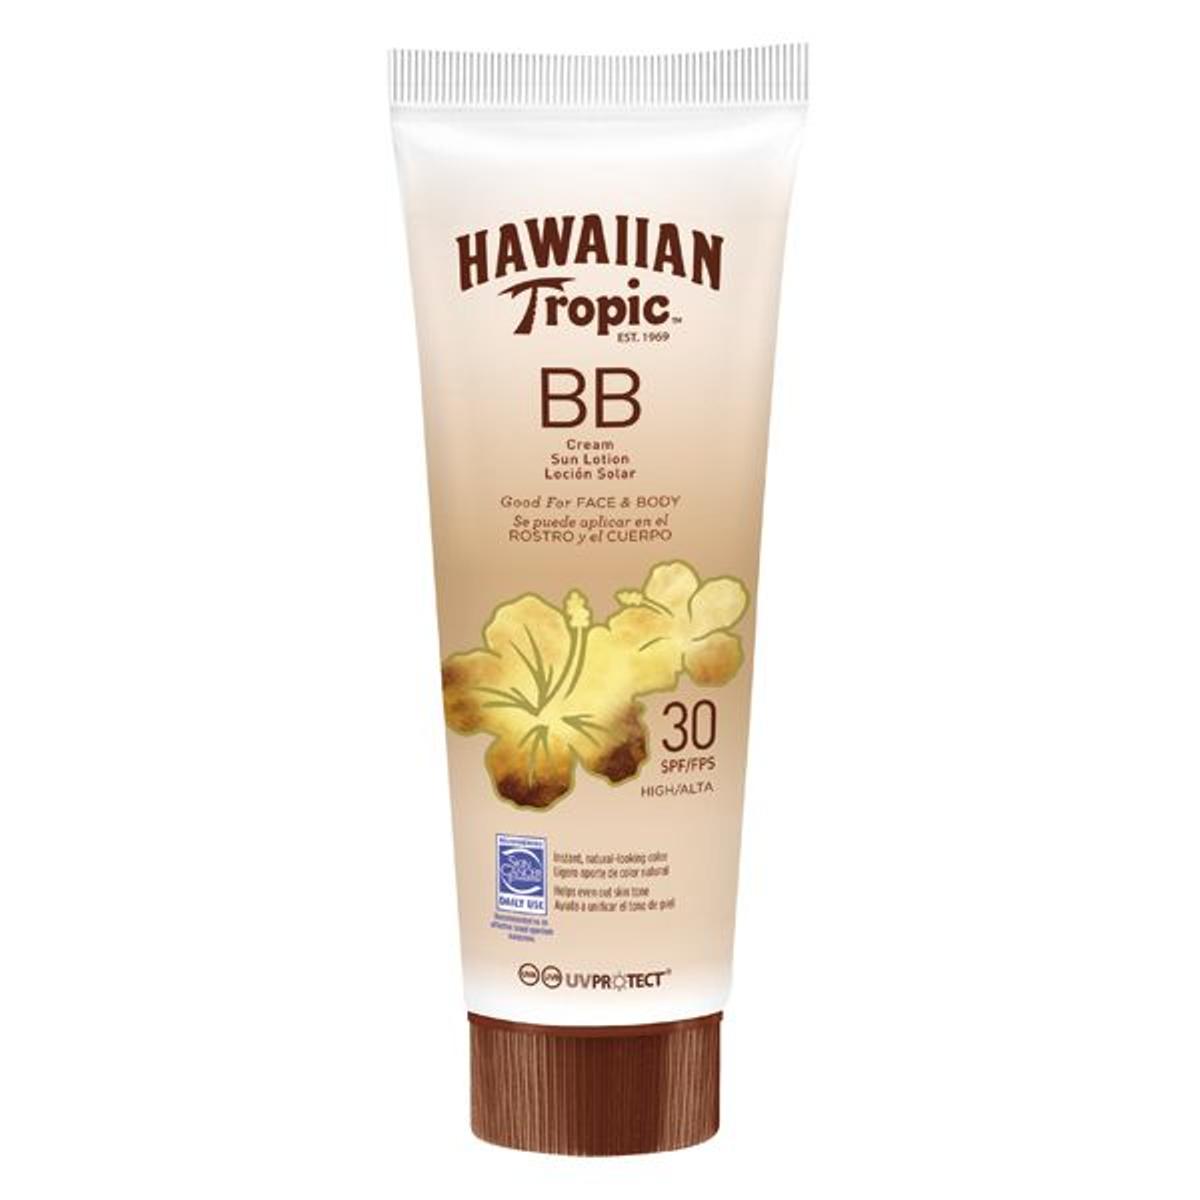 BB Cream, Hawaiian Tropic 